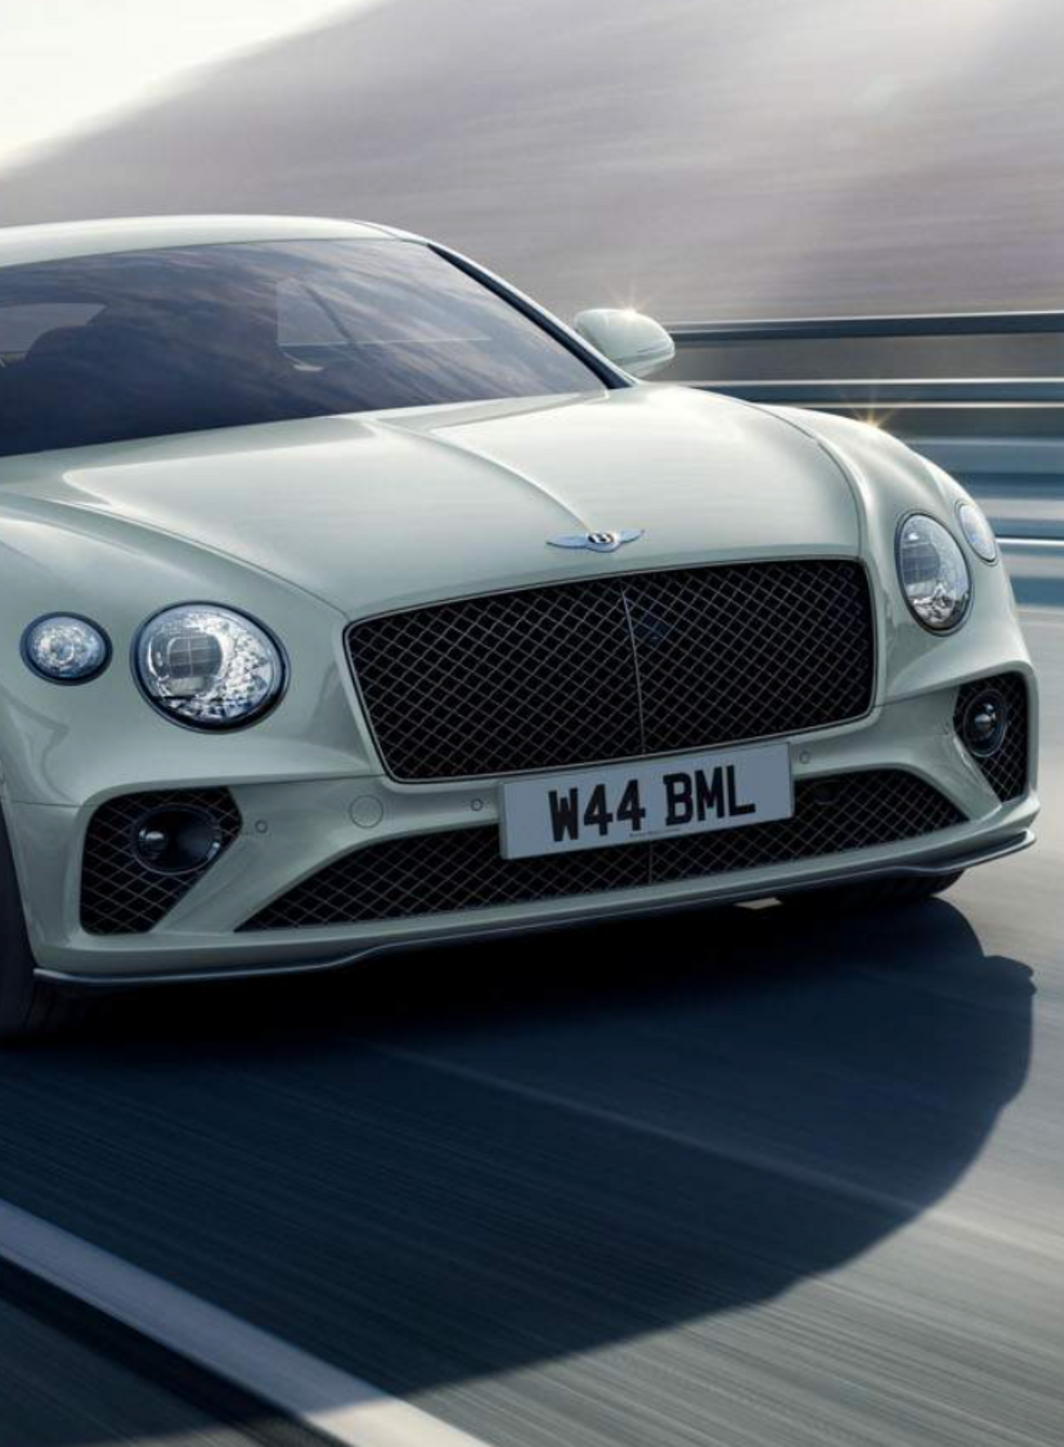 Comment la marque Bentley prend-t-elle le virage de l’éco-responsabilité ?